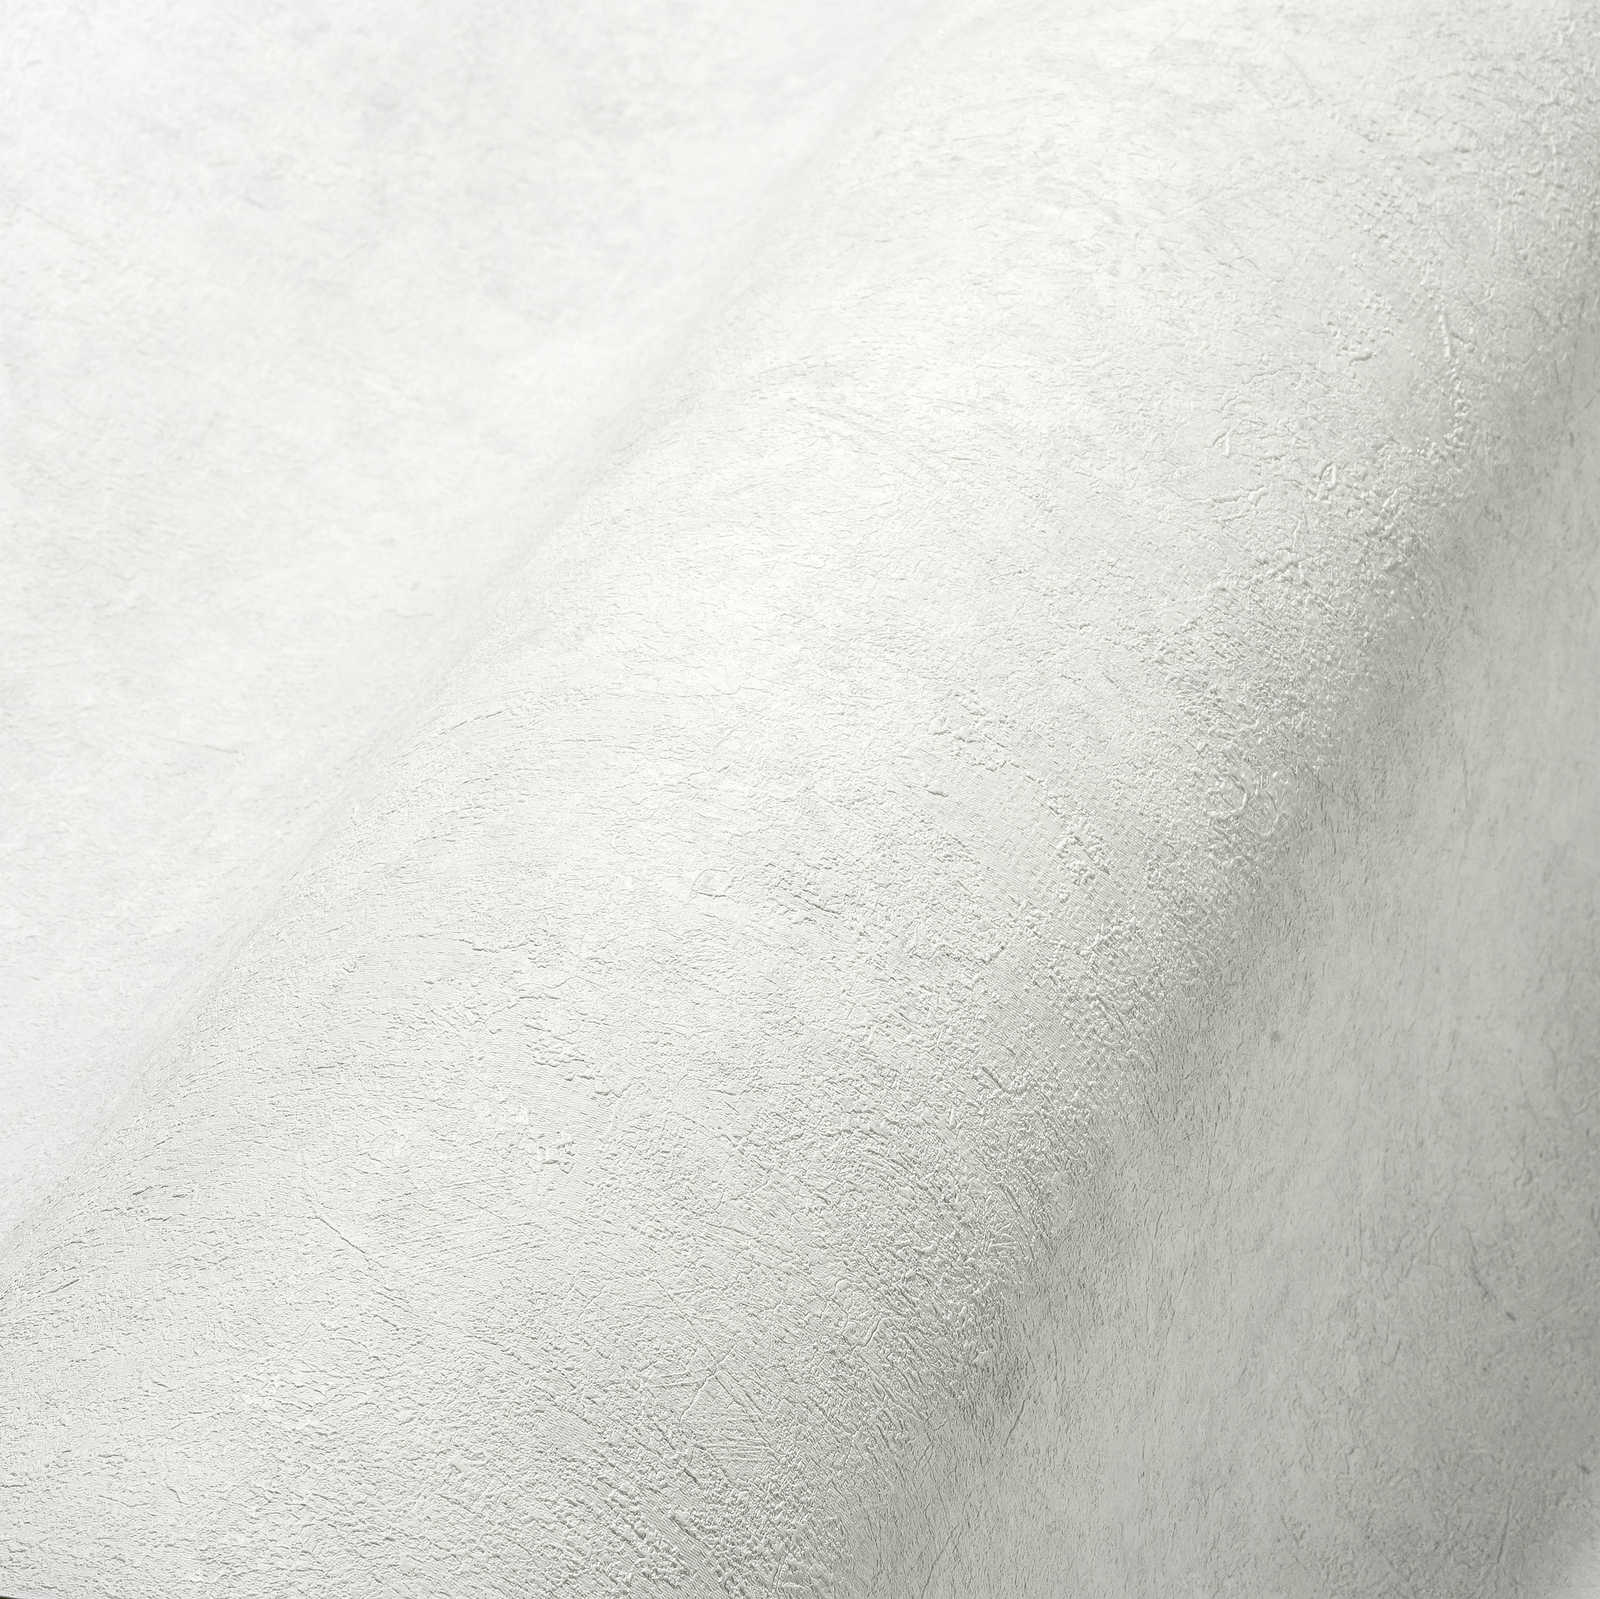             Papel pintado unitario con textura en tonos sutiles - blanco, gris
        